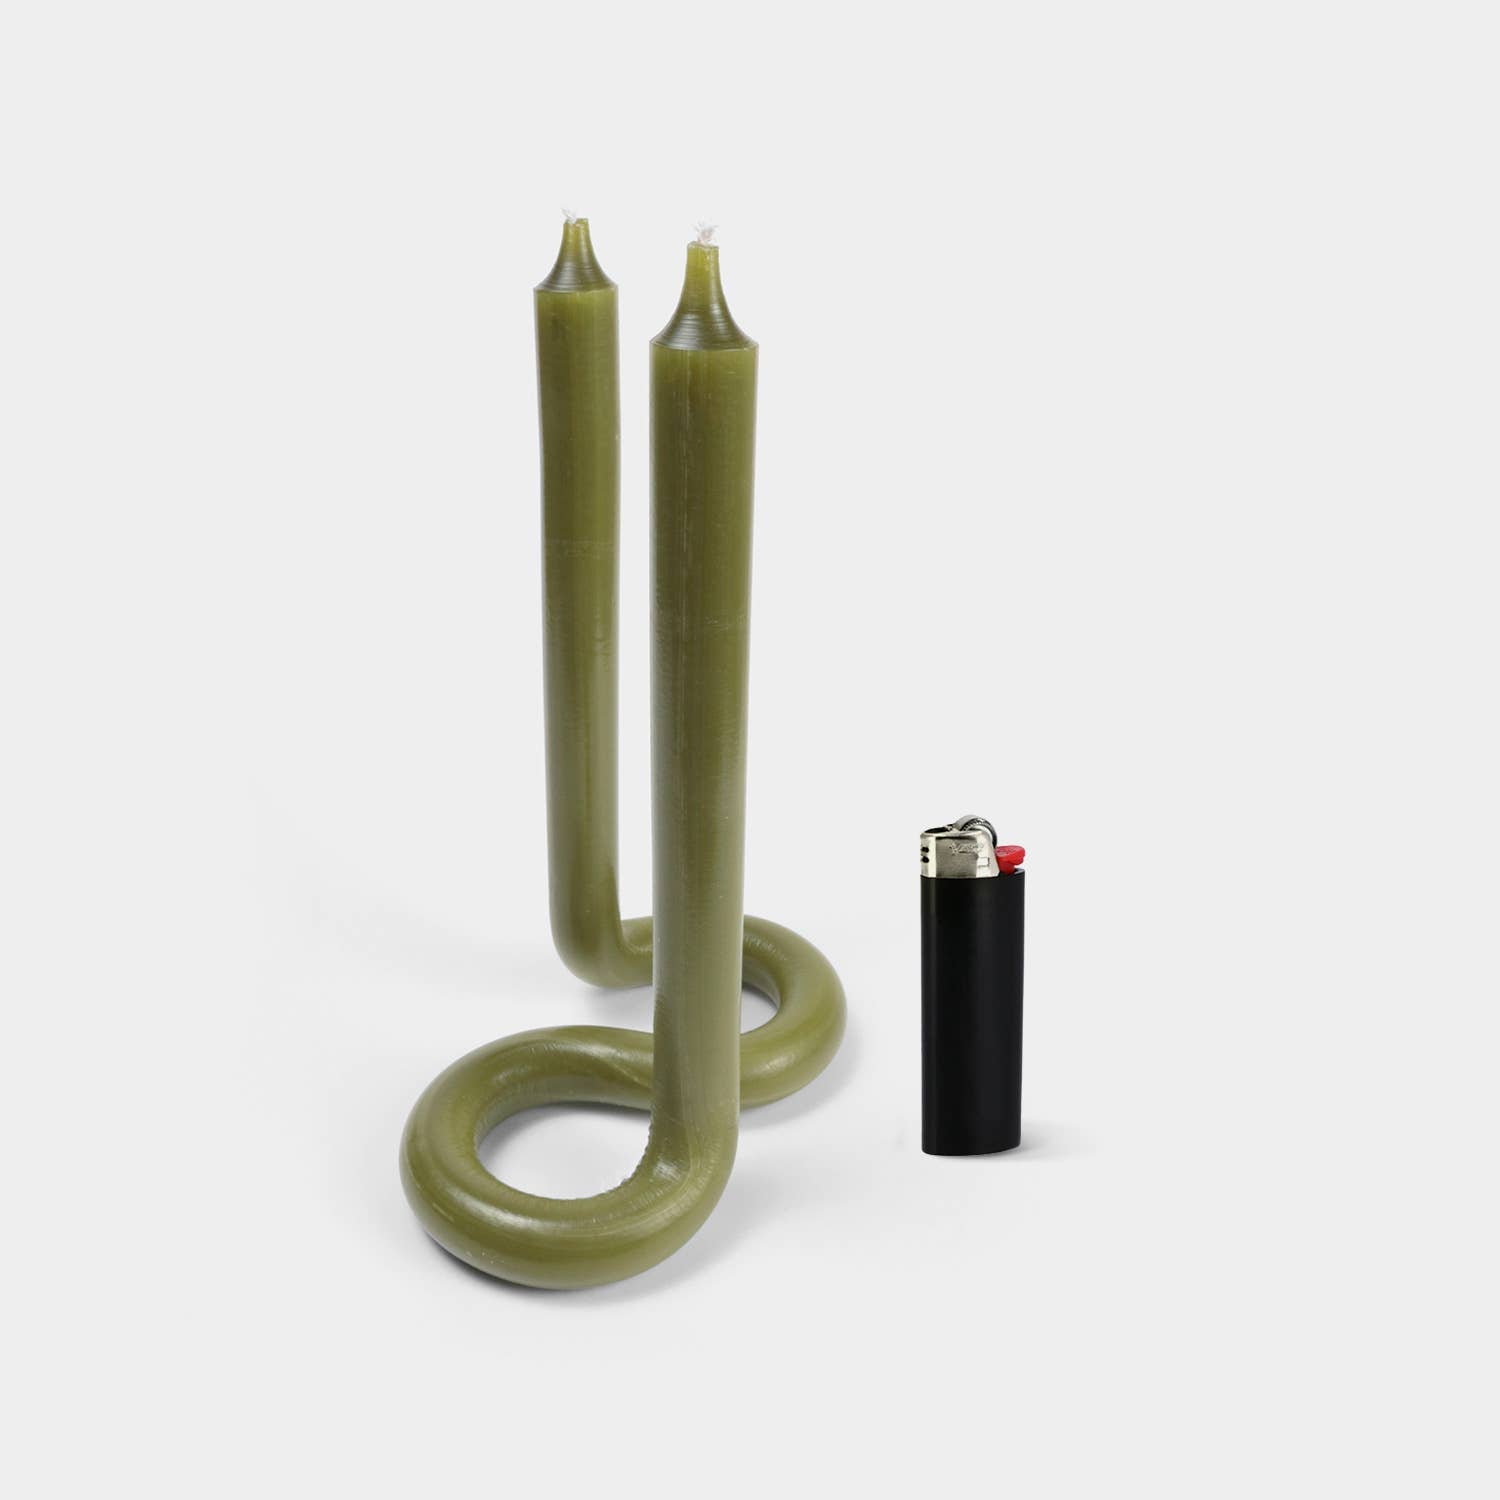 54 Celsius Twist Candle Sticks by Lex Pott - Olive - Little Birdies